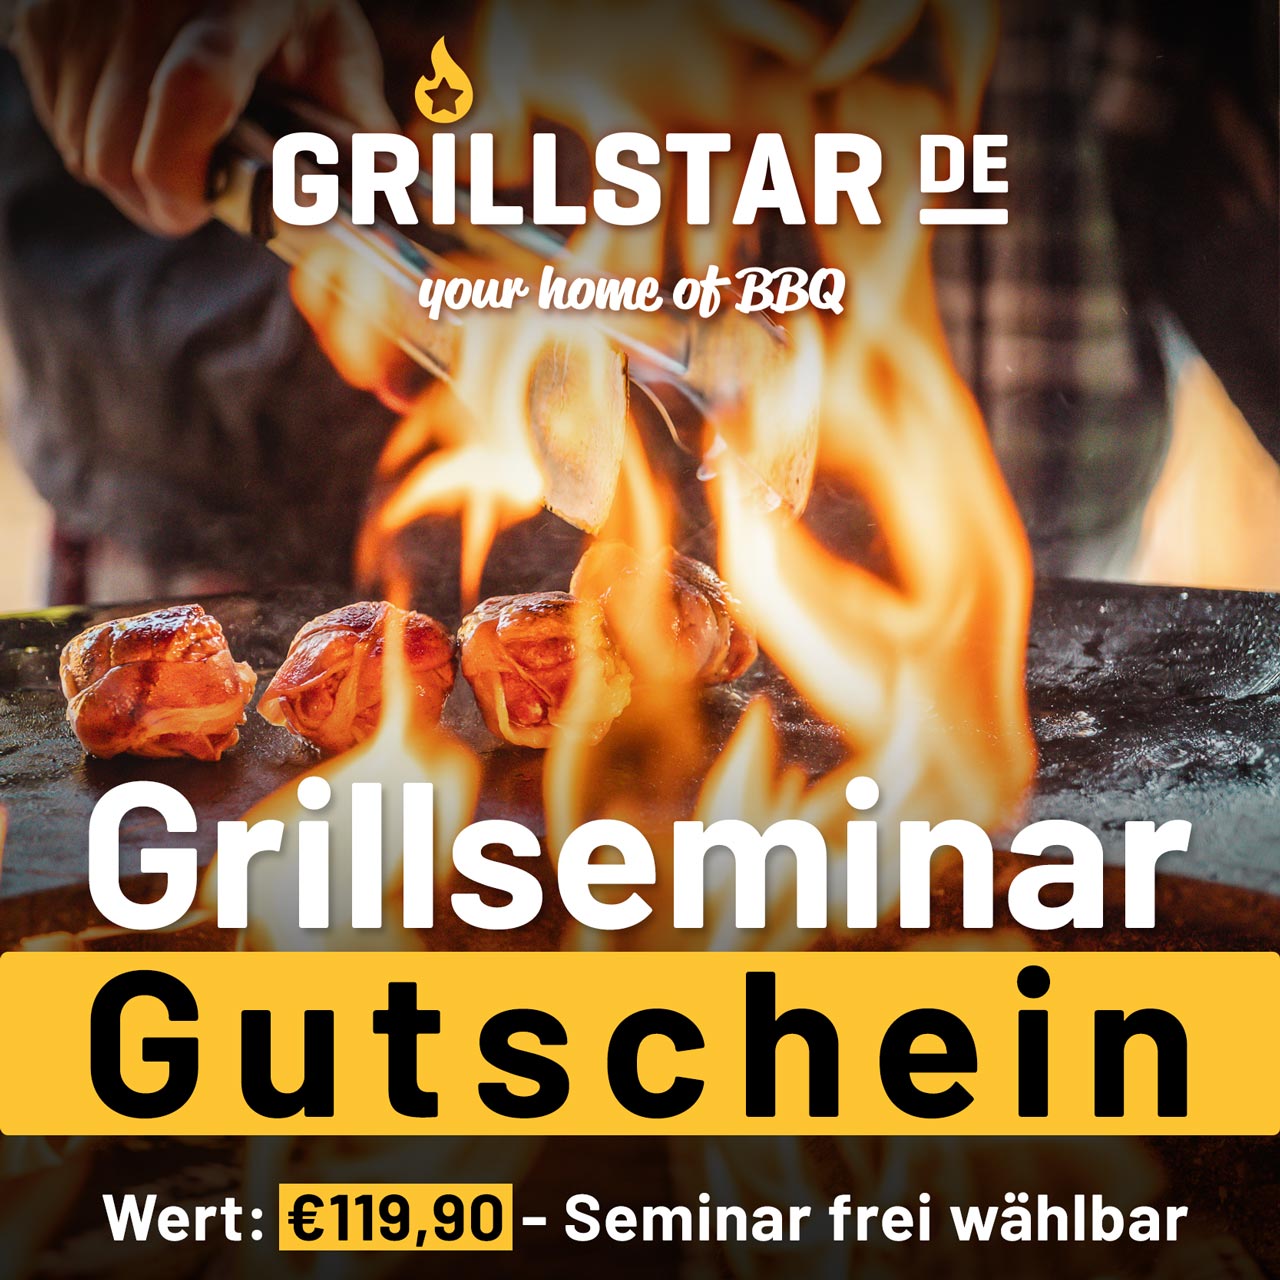 Grillseminar - Gutschein €119,90